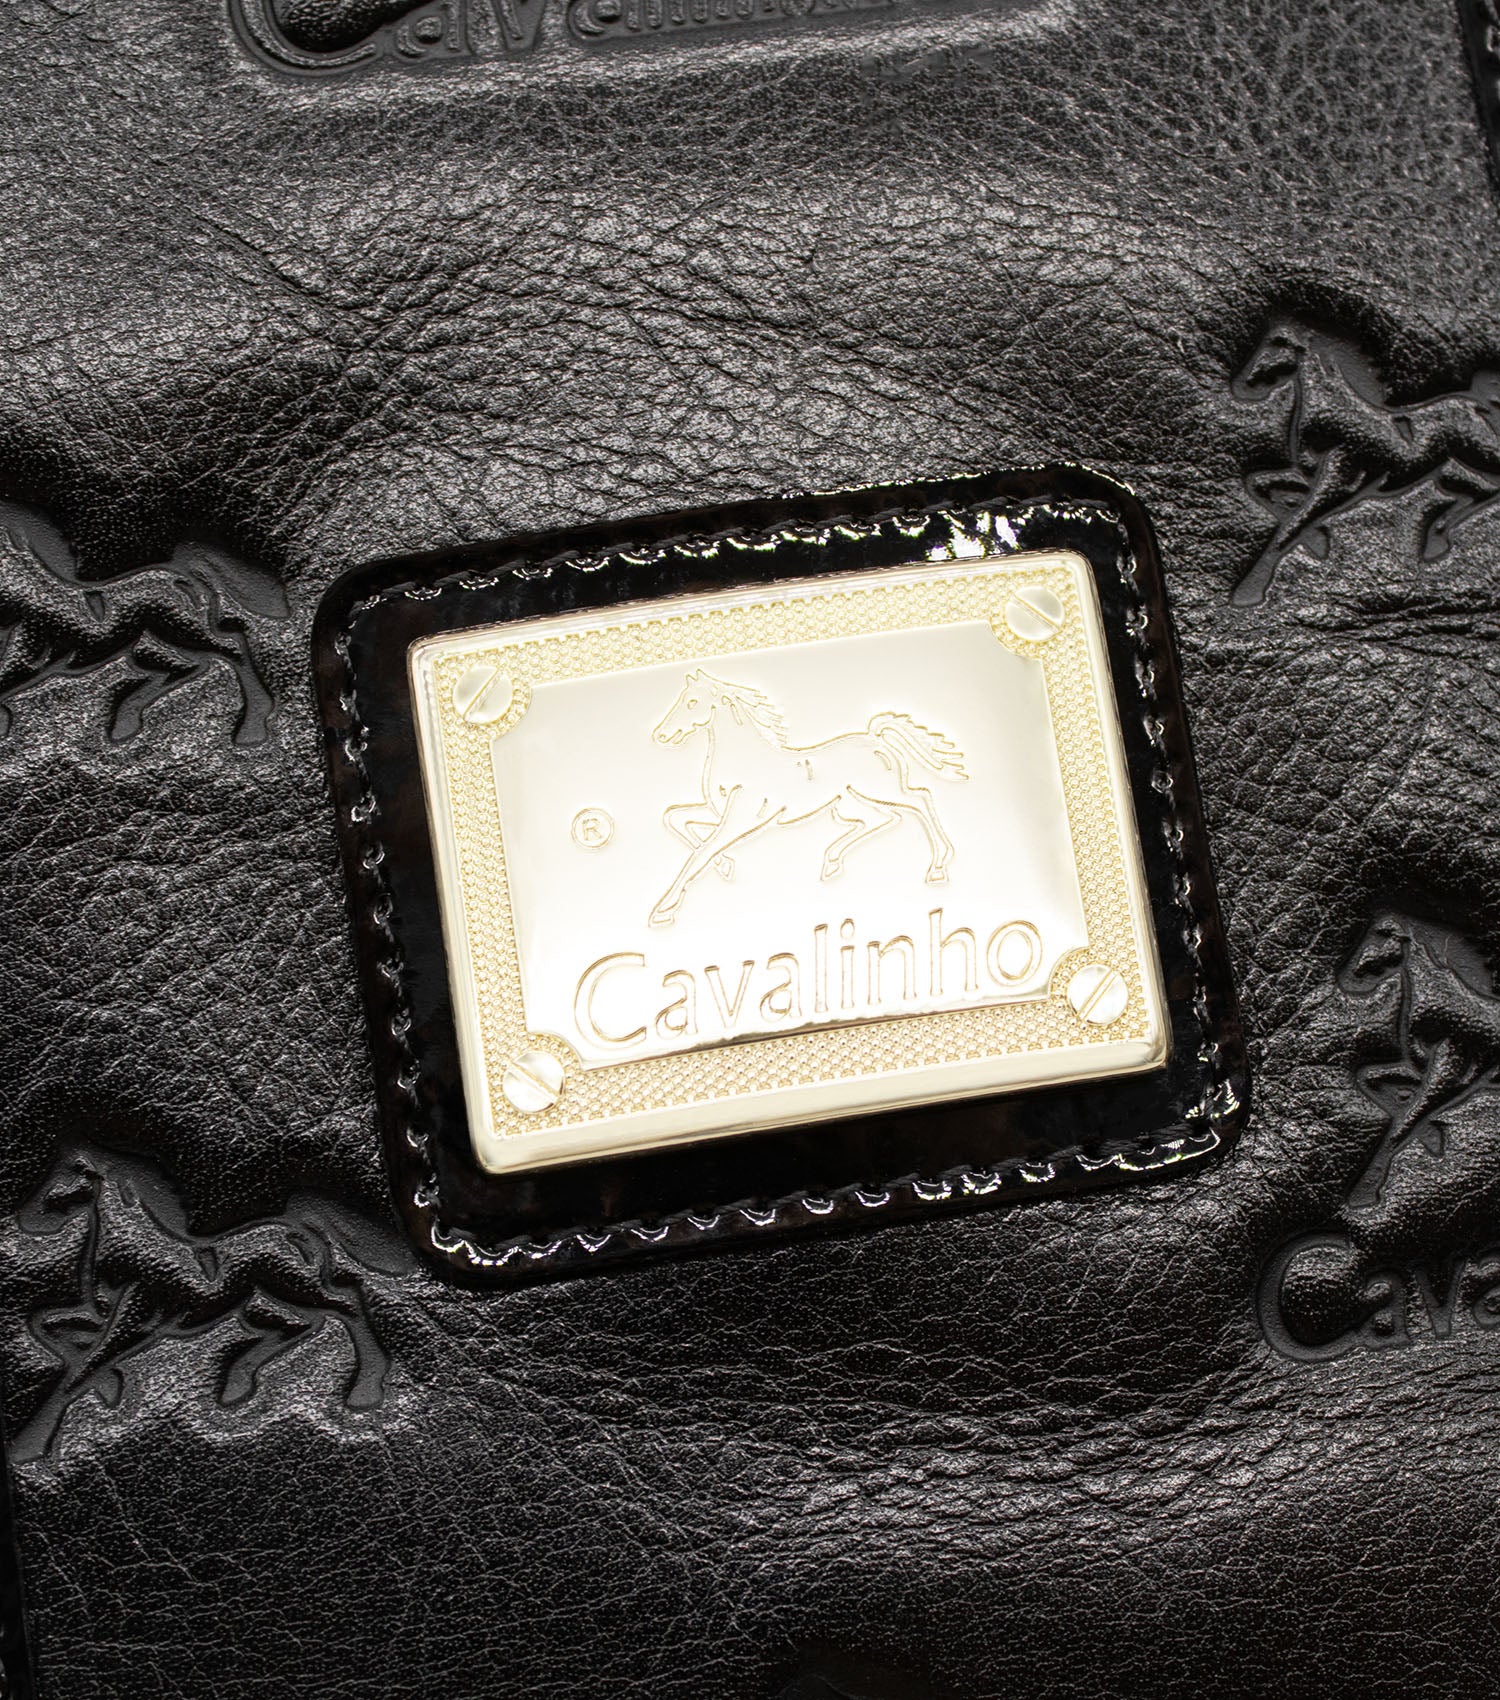 Cavalinho Royal Handbag - Black and White - 18390145.21_P05